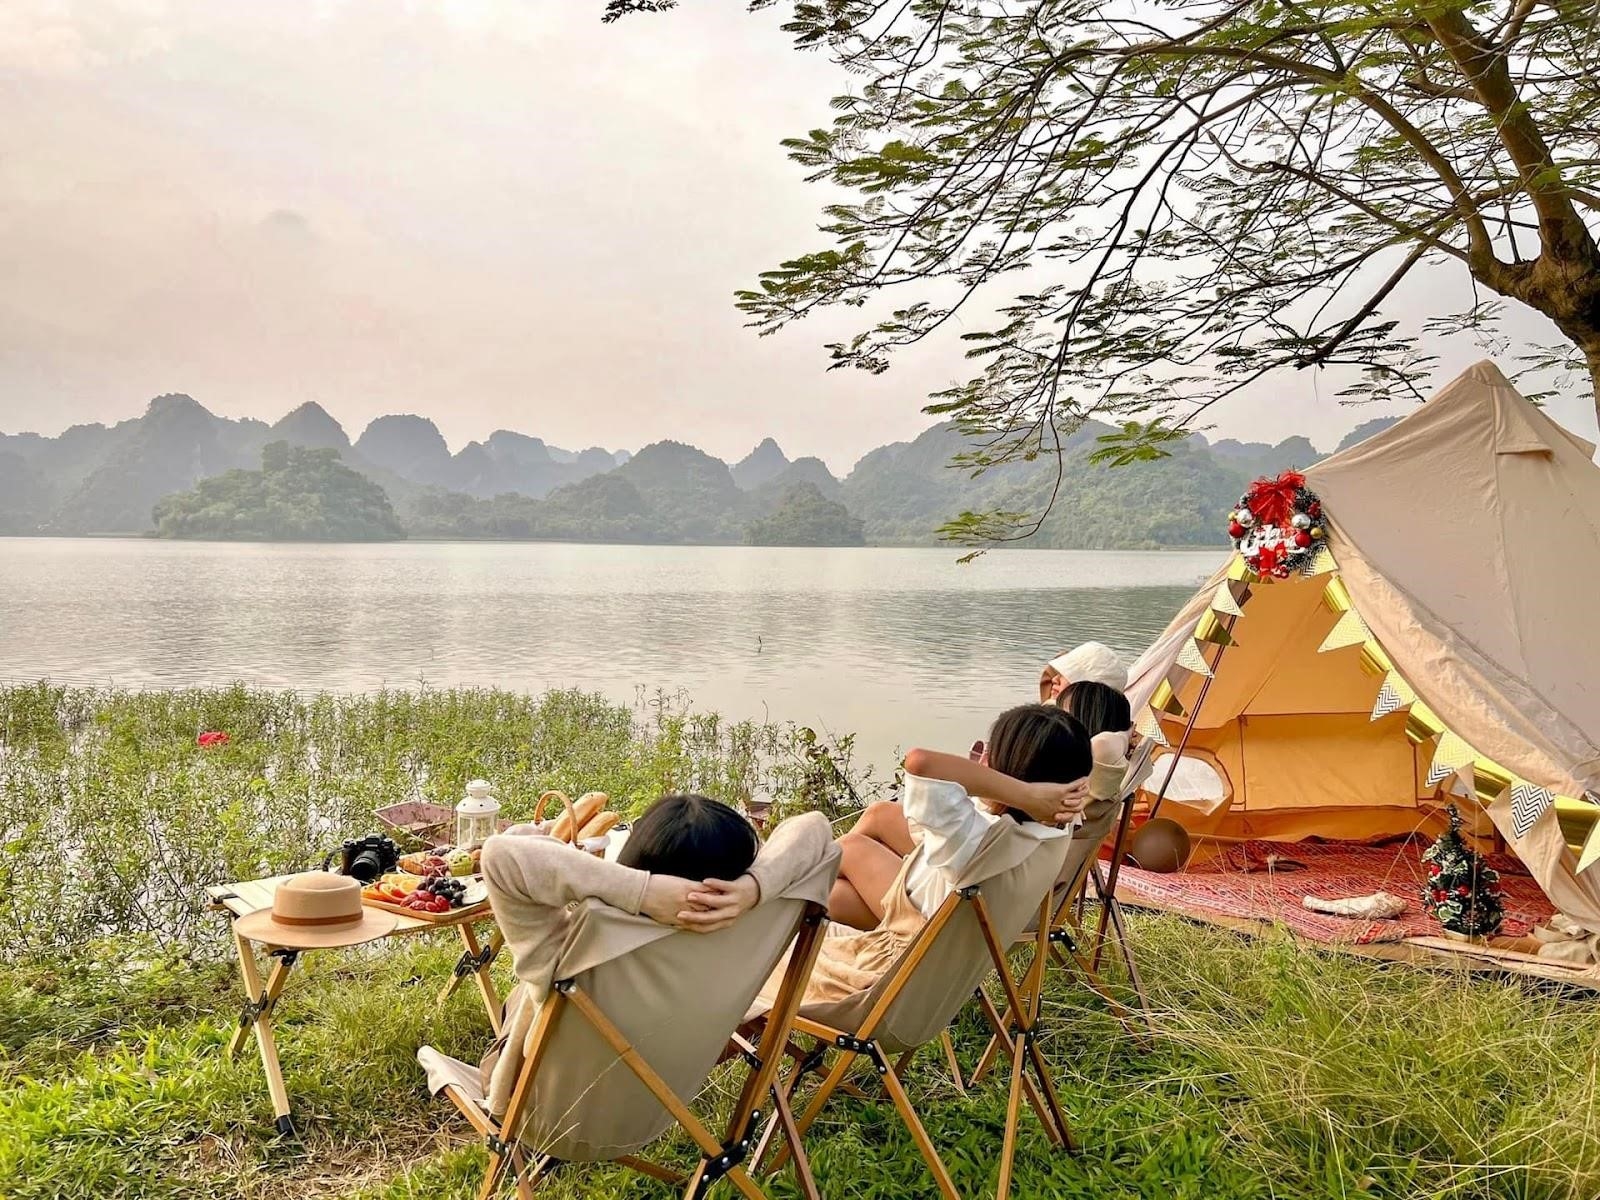 4. Gần Hà Nội, hồ Quan Sơn là một điểm đến tuyệt vời cho chuyến đi trong ngày.